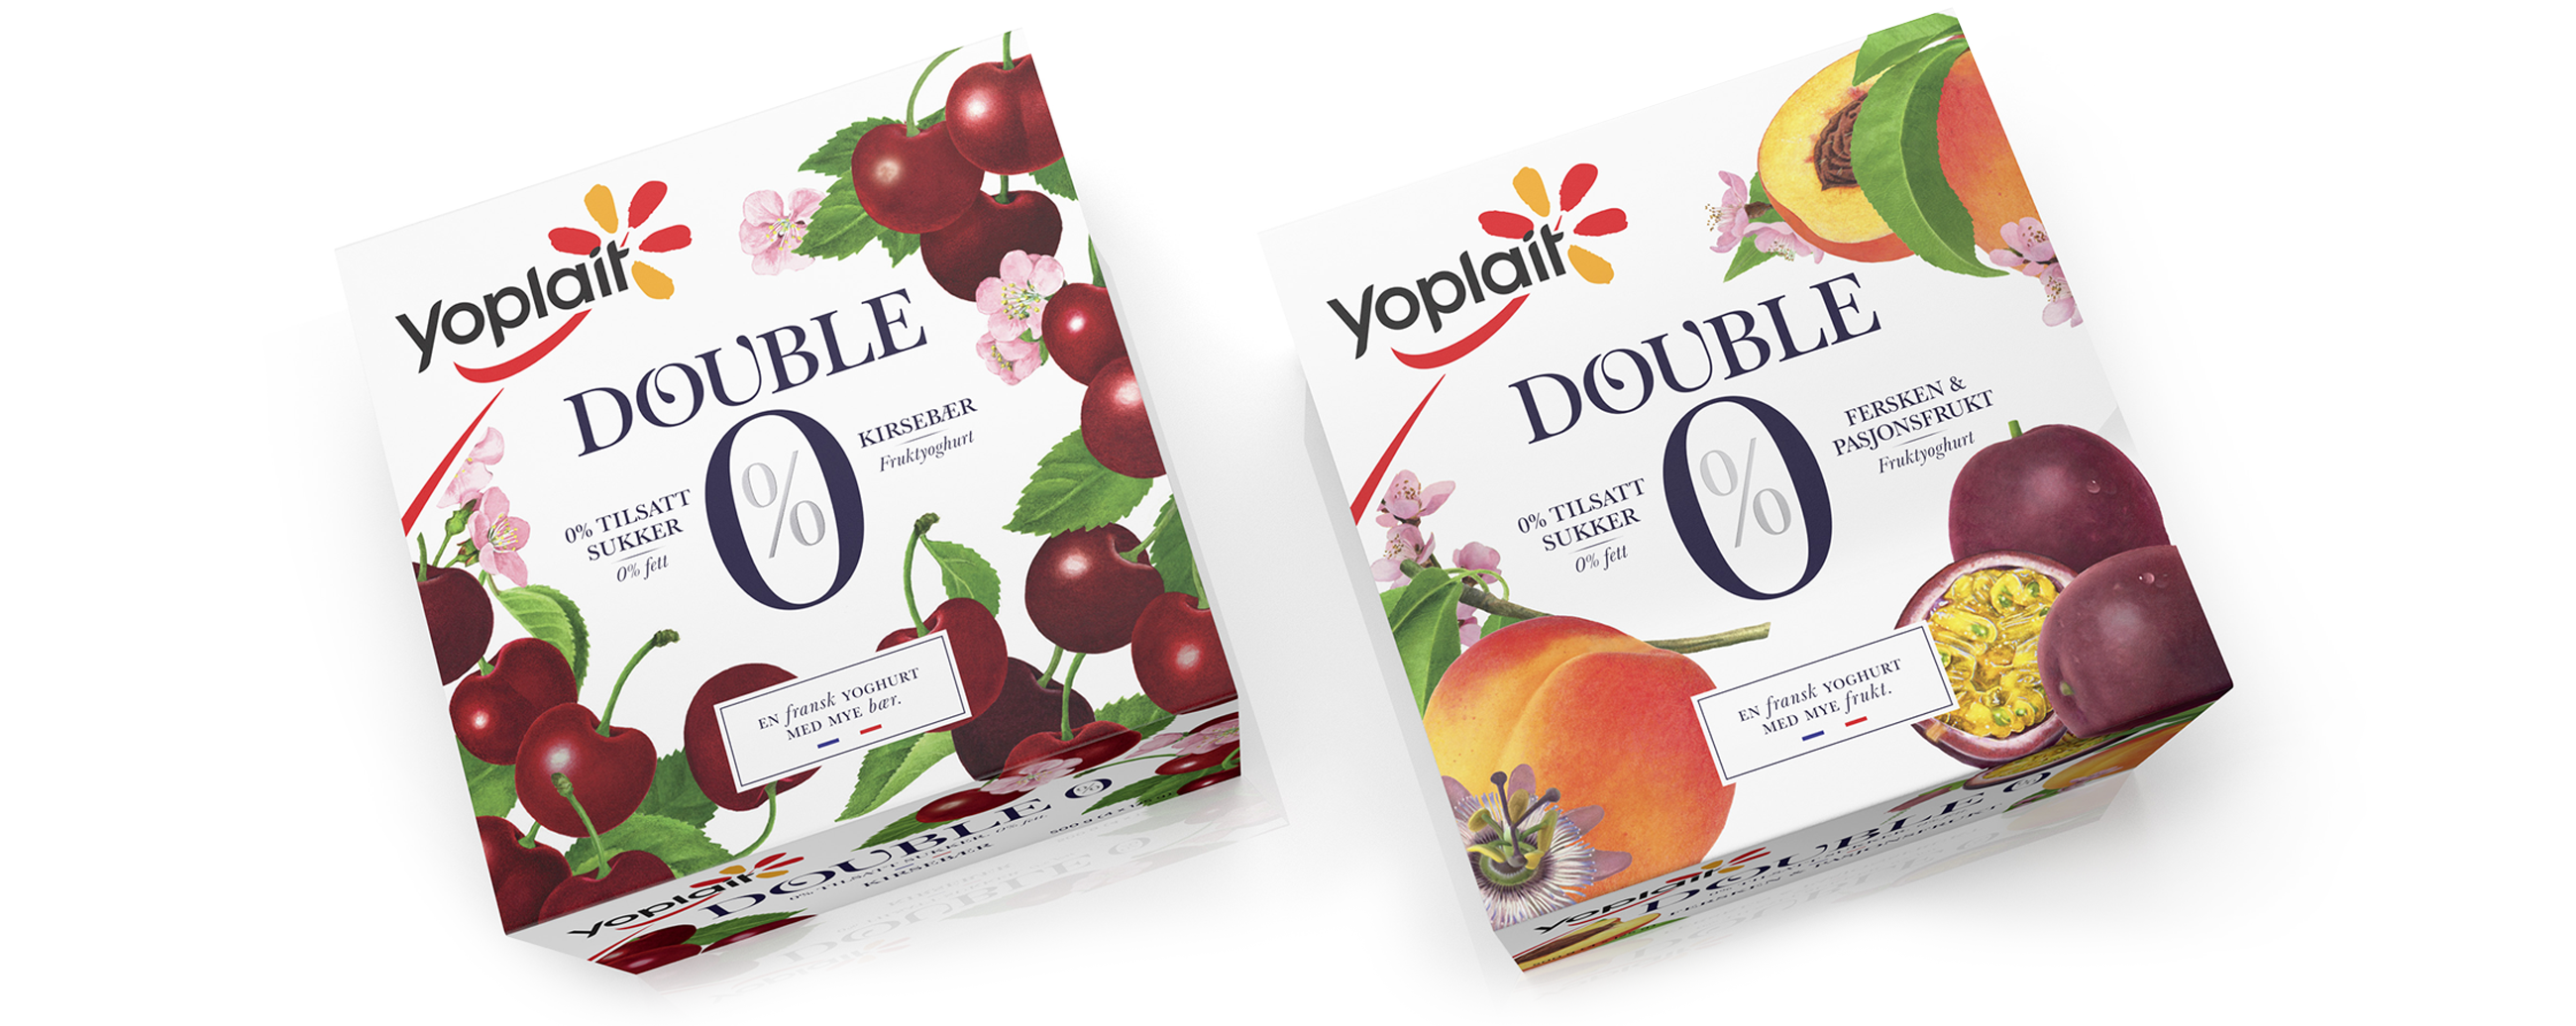 Yoplait Double 0% yoghurt Kirsebær og fersken & pasjonsfrukt, cherry, peach & passionfruit. Emballasje packaging design.